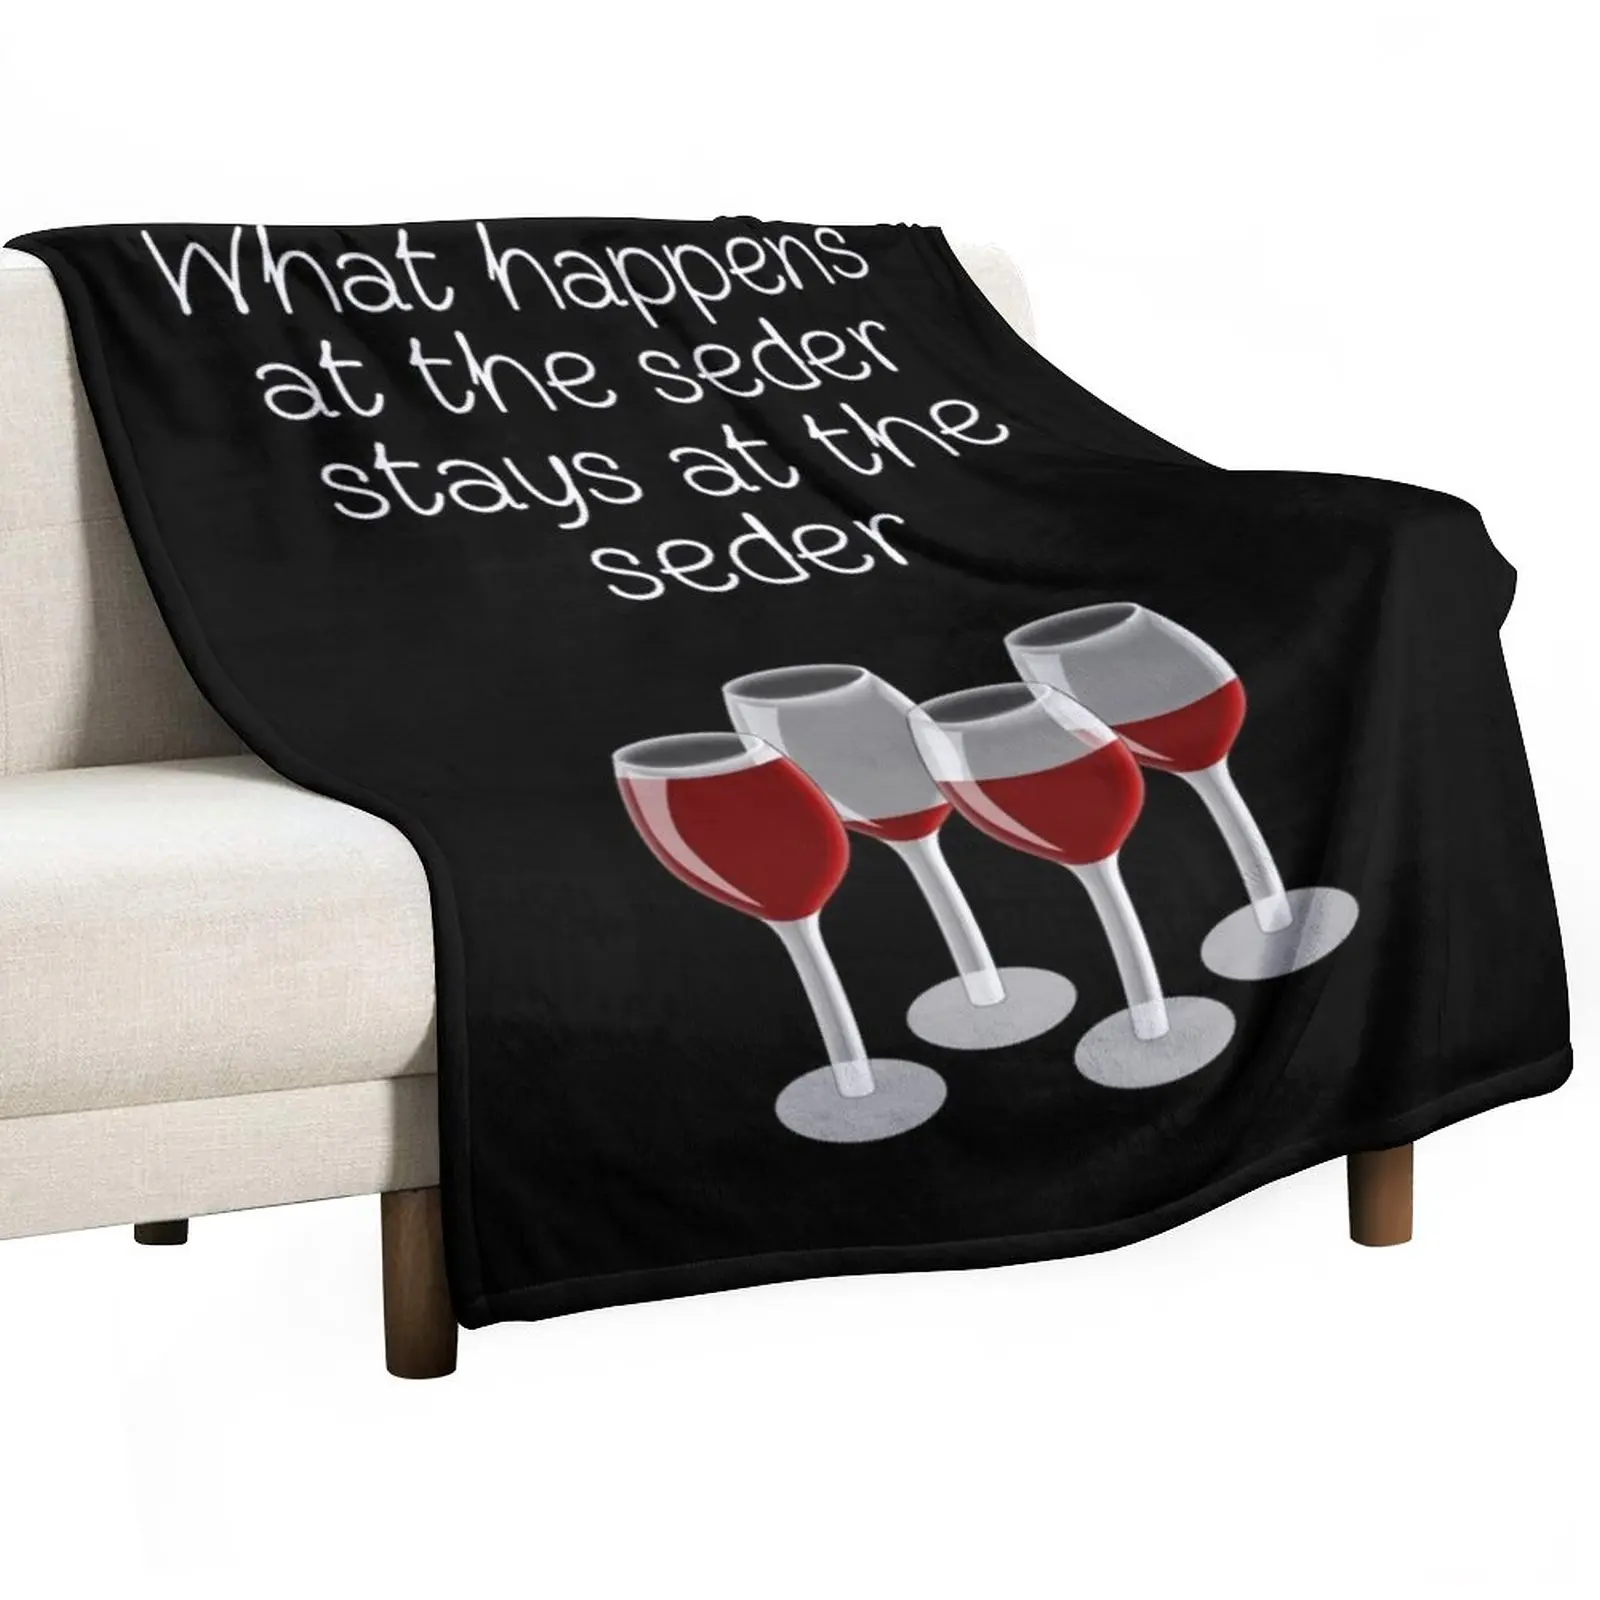 Новое специальное предложение на Пасху - то, что происходит на седере, остается на седере! (B) Плед, стеганое одеяло, одеяло роскошного бренда, одеяло - 0